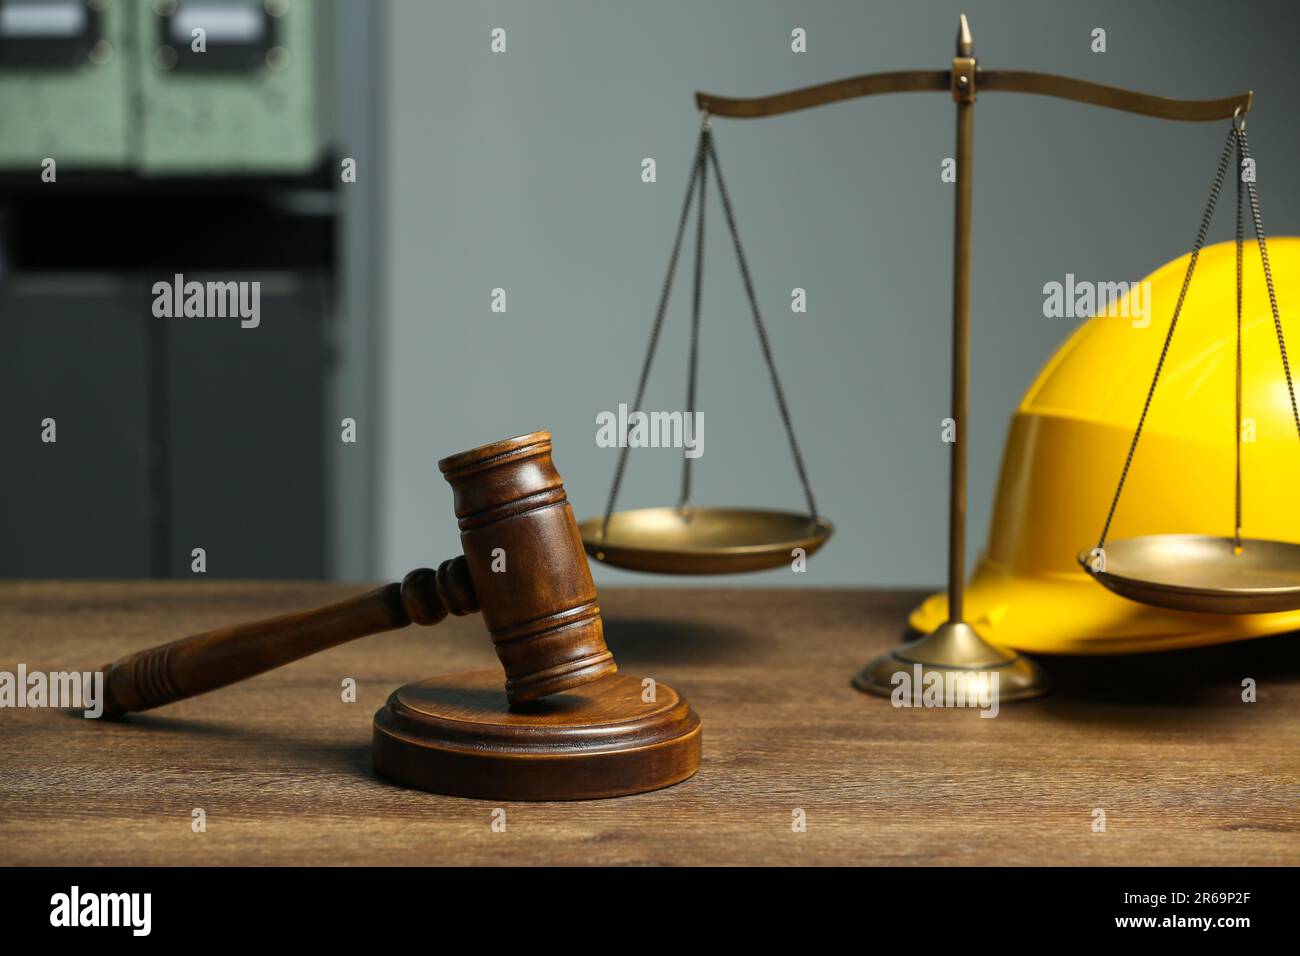 Concepts de la construction et du droit foncier. Gavel, balance de justice et casque de sécurité sur table en bois Banque D'Images